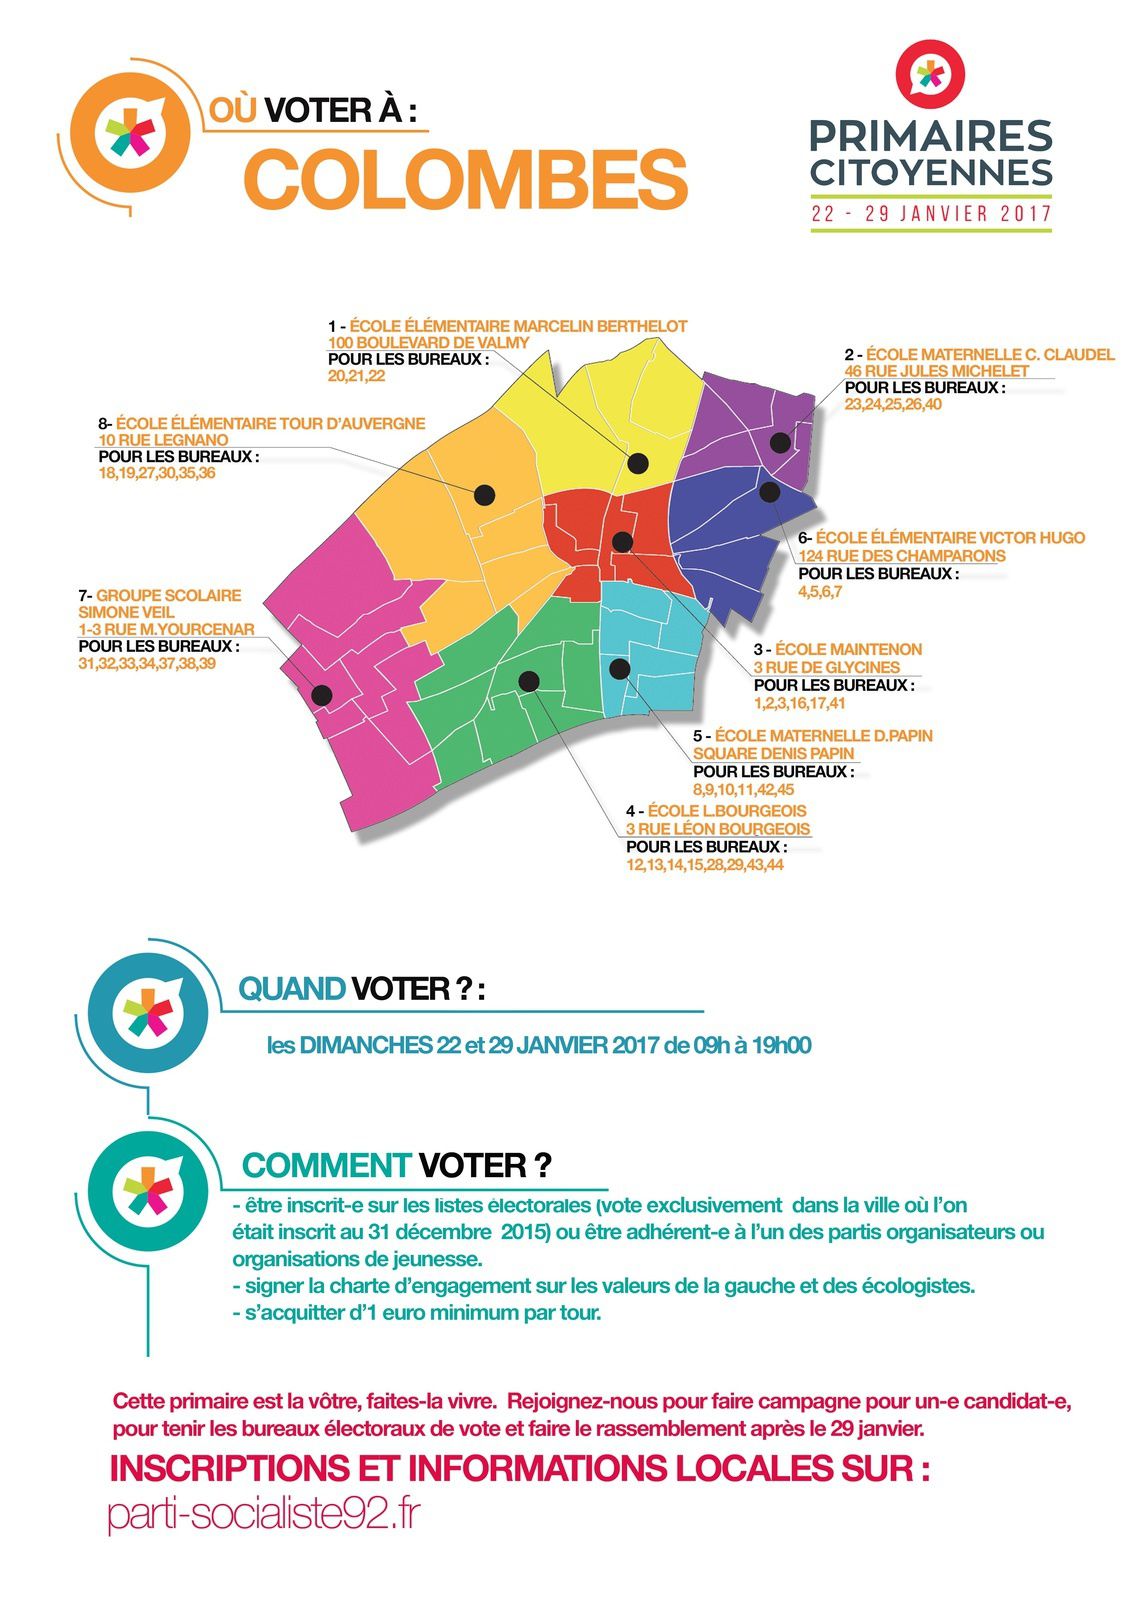 COLOMBES : découpage par bureau de vote des résultats détaillés des primaires citoyennes 2017